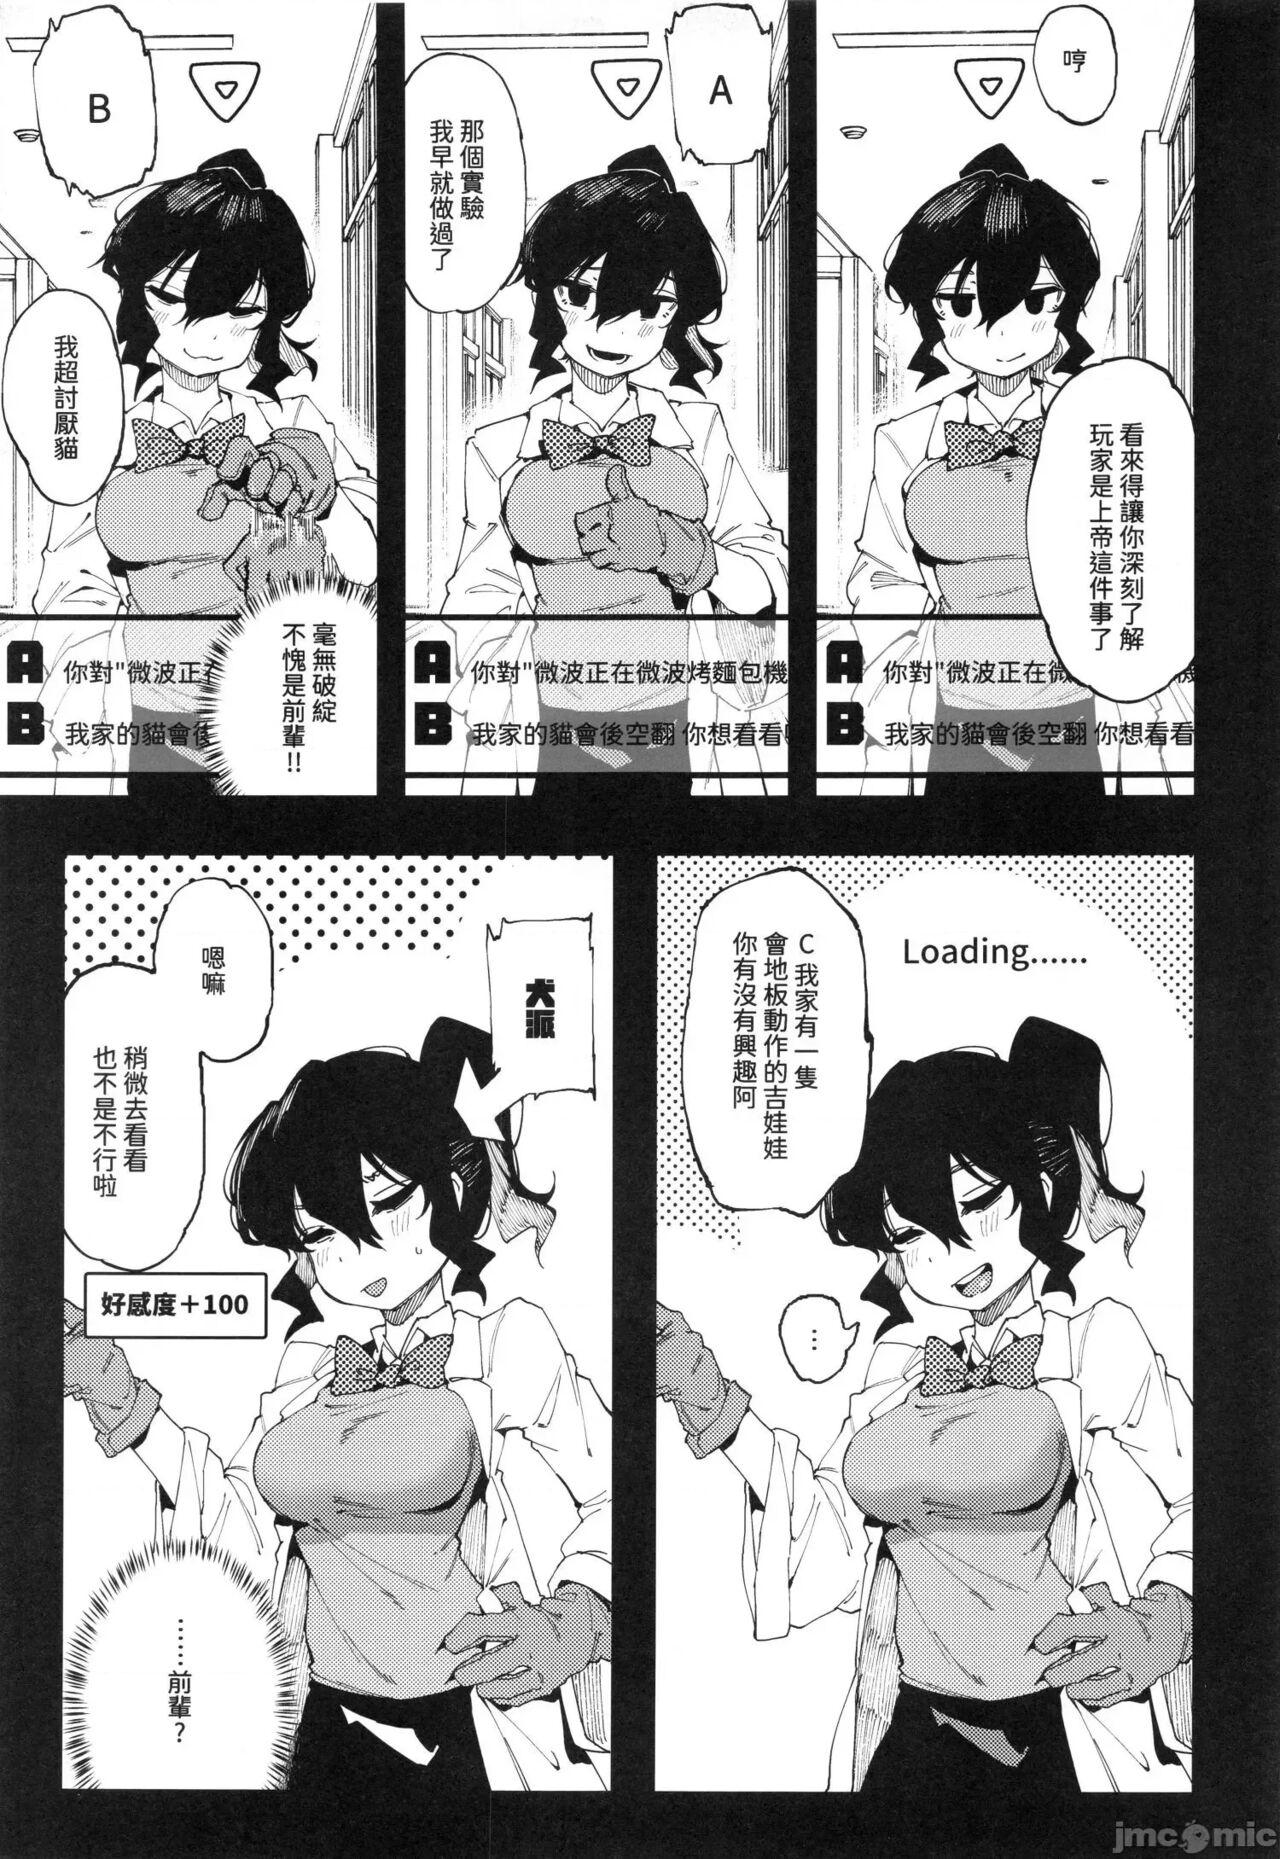 Blackdick 乳酸少女 II - Original Rebolando - Page 6